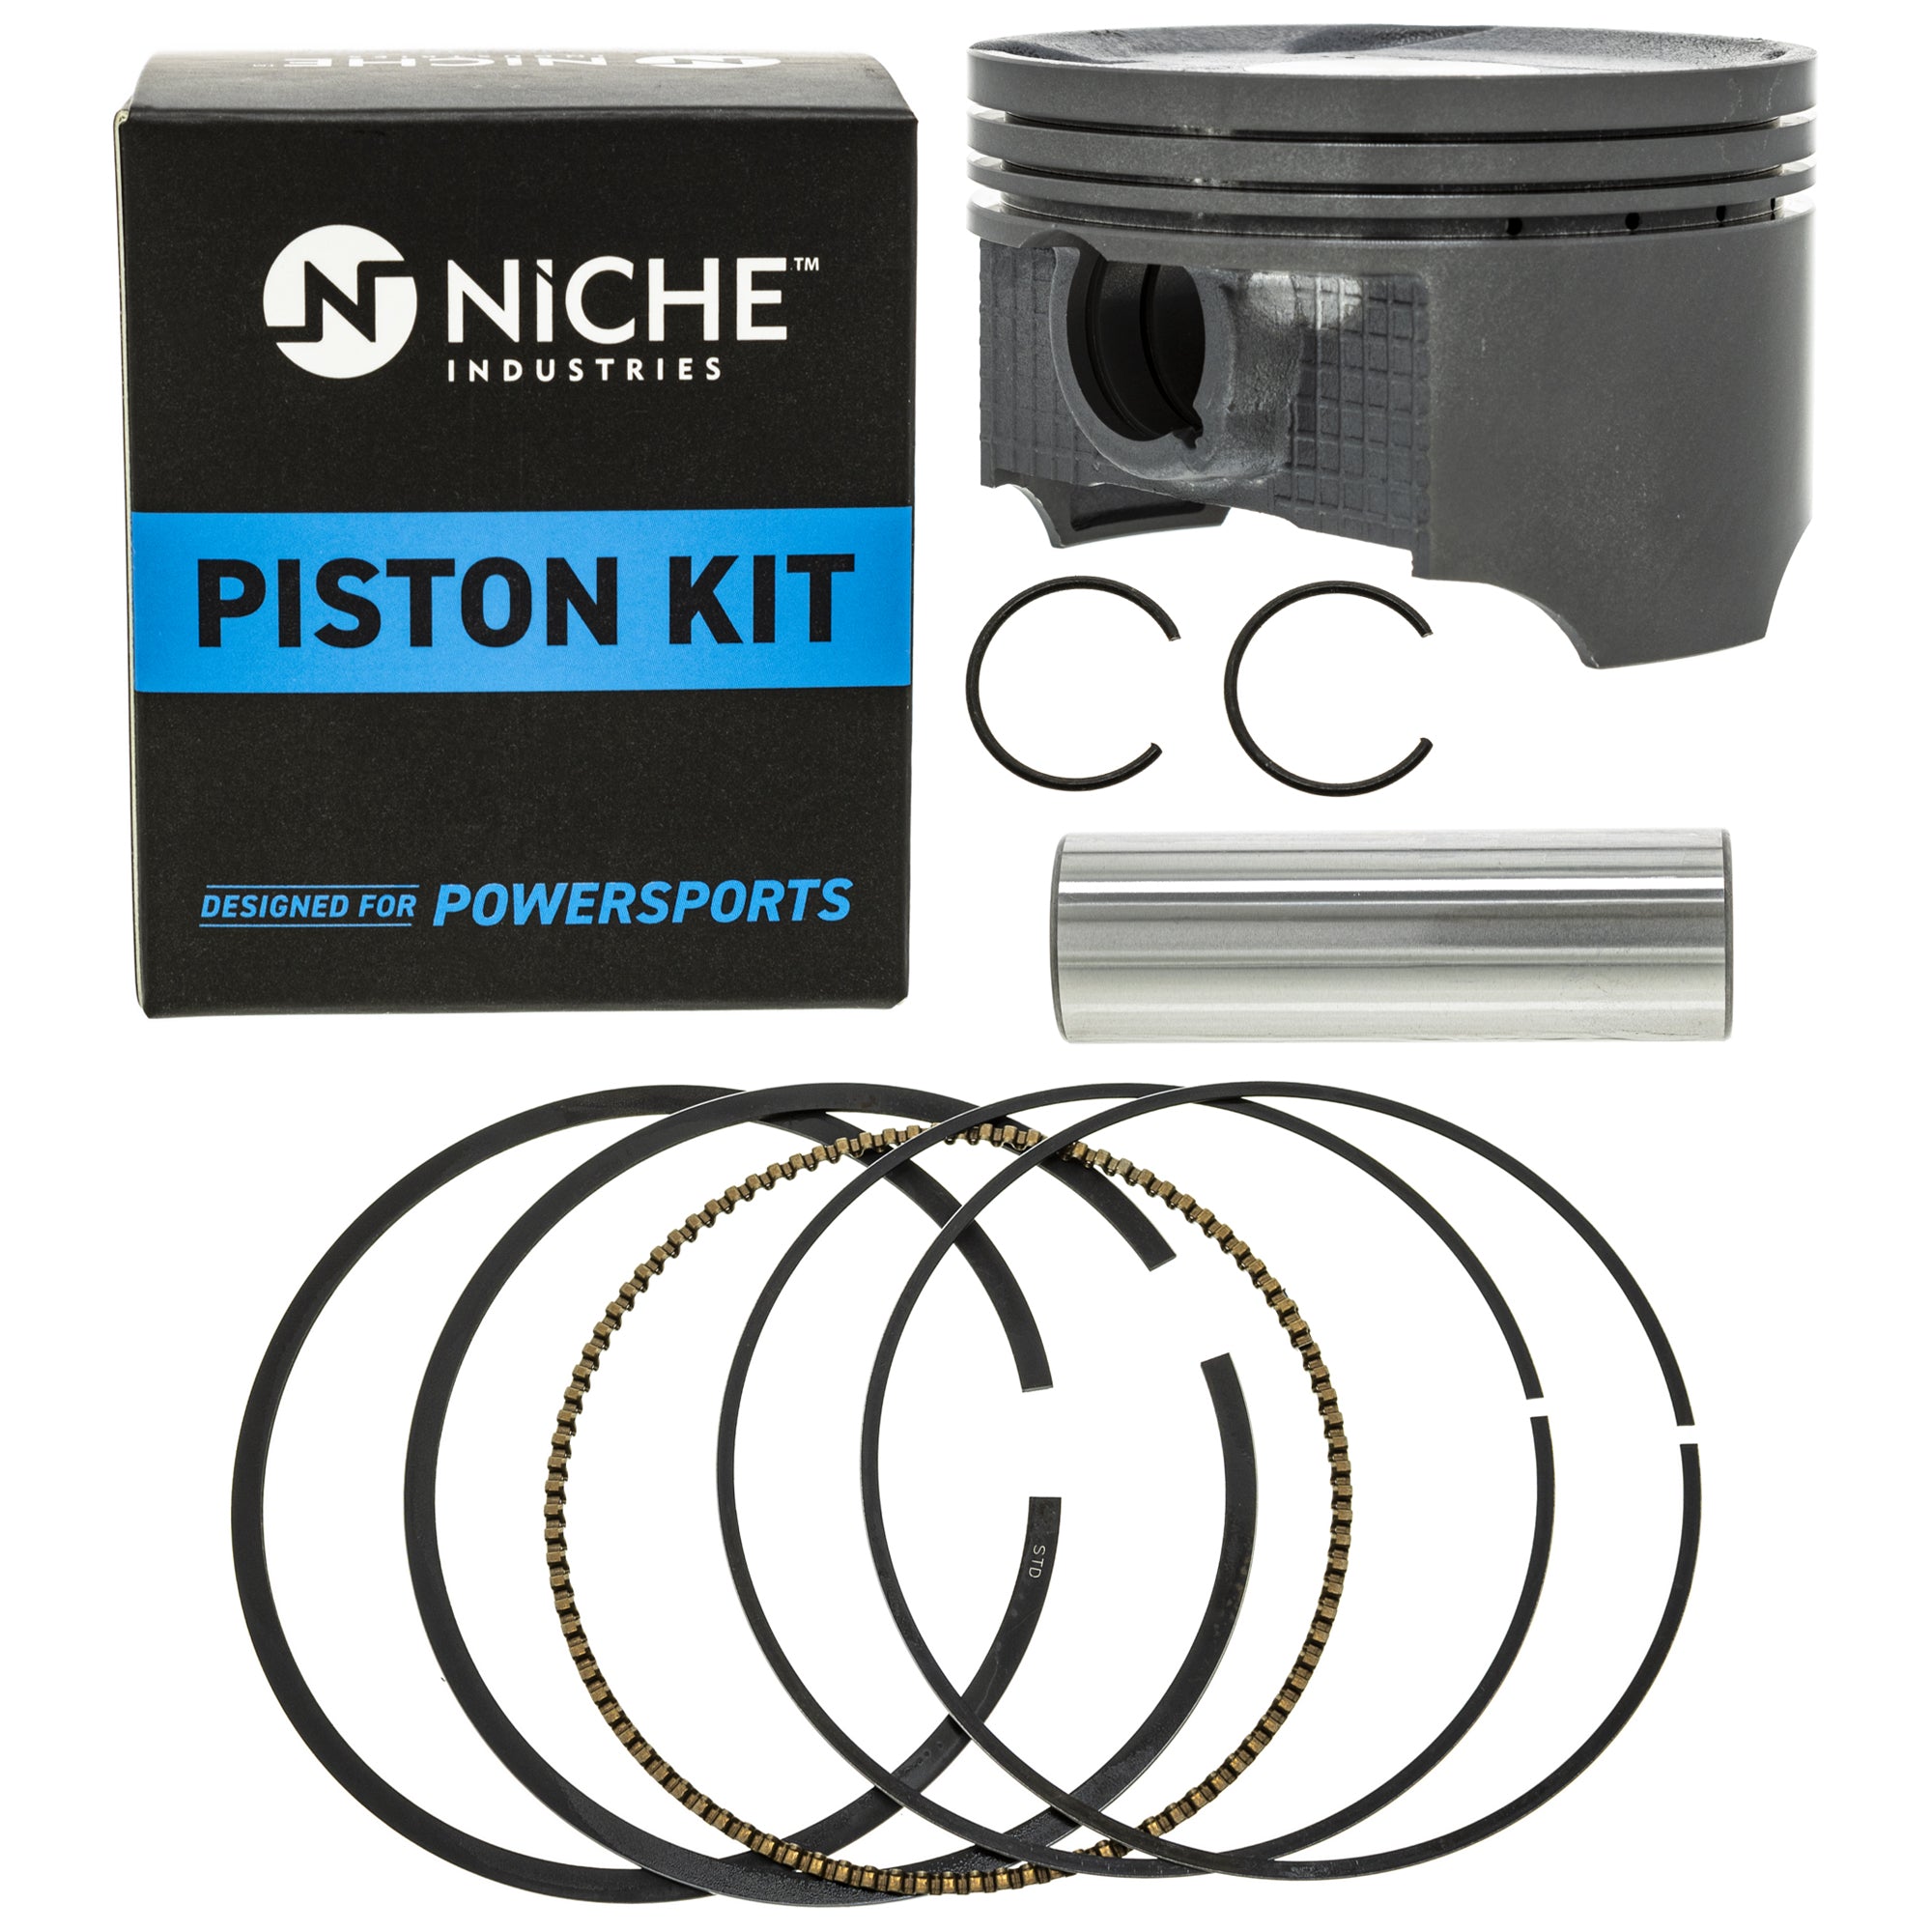 Piston Kit for zOTHER Suzuki King Eiger 12111-38F21-0F0 12100-38F21-050 NICHE 519-KPS2219T